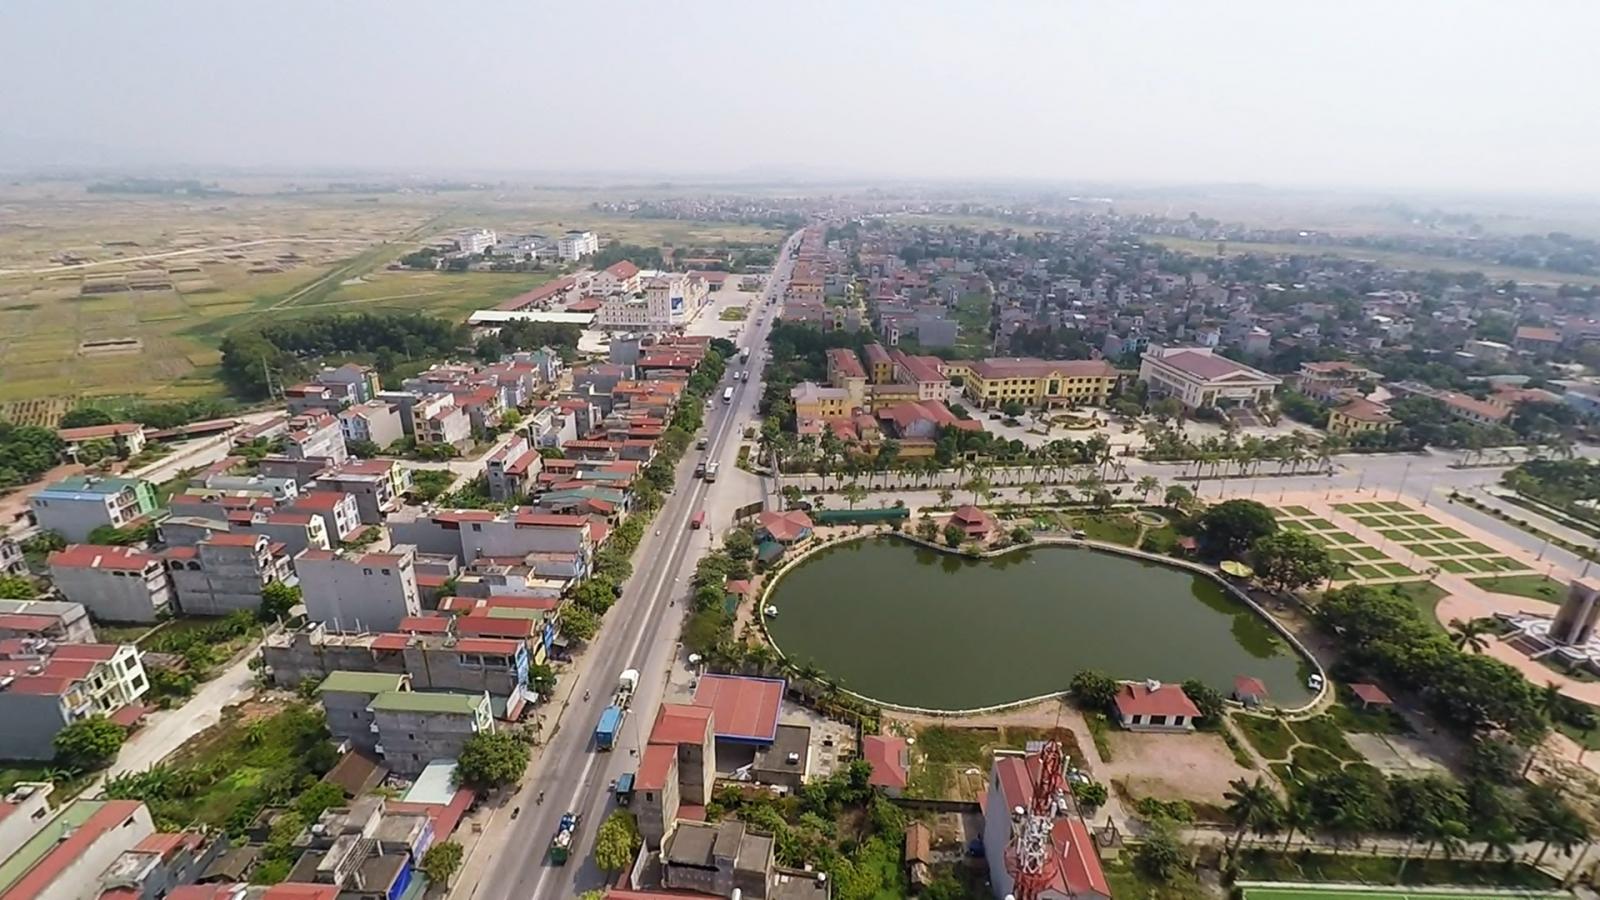 Sắp có thêm khu nhà ở xã hội trị giá hơn 3.000 tỷ đồng tại Bắc Ninh